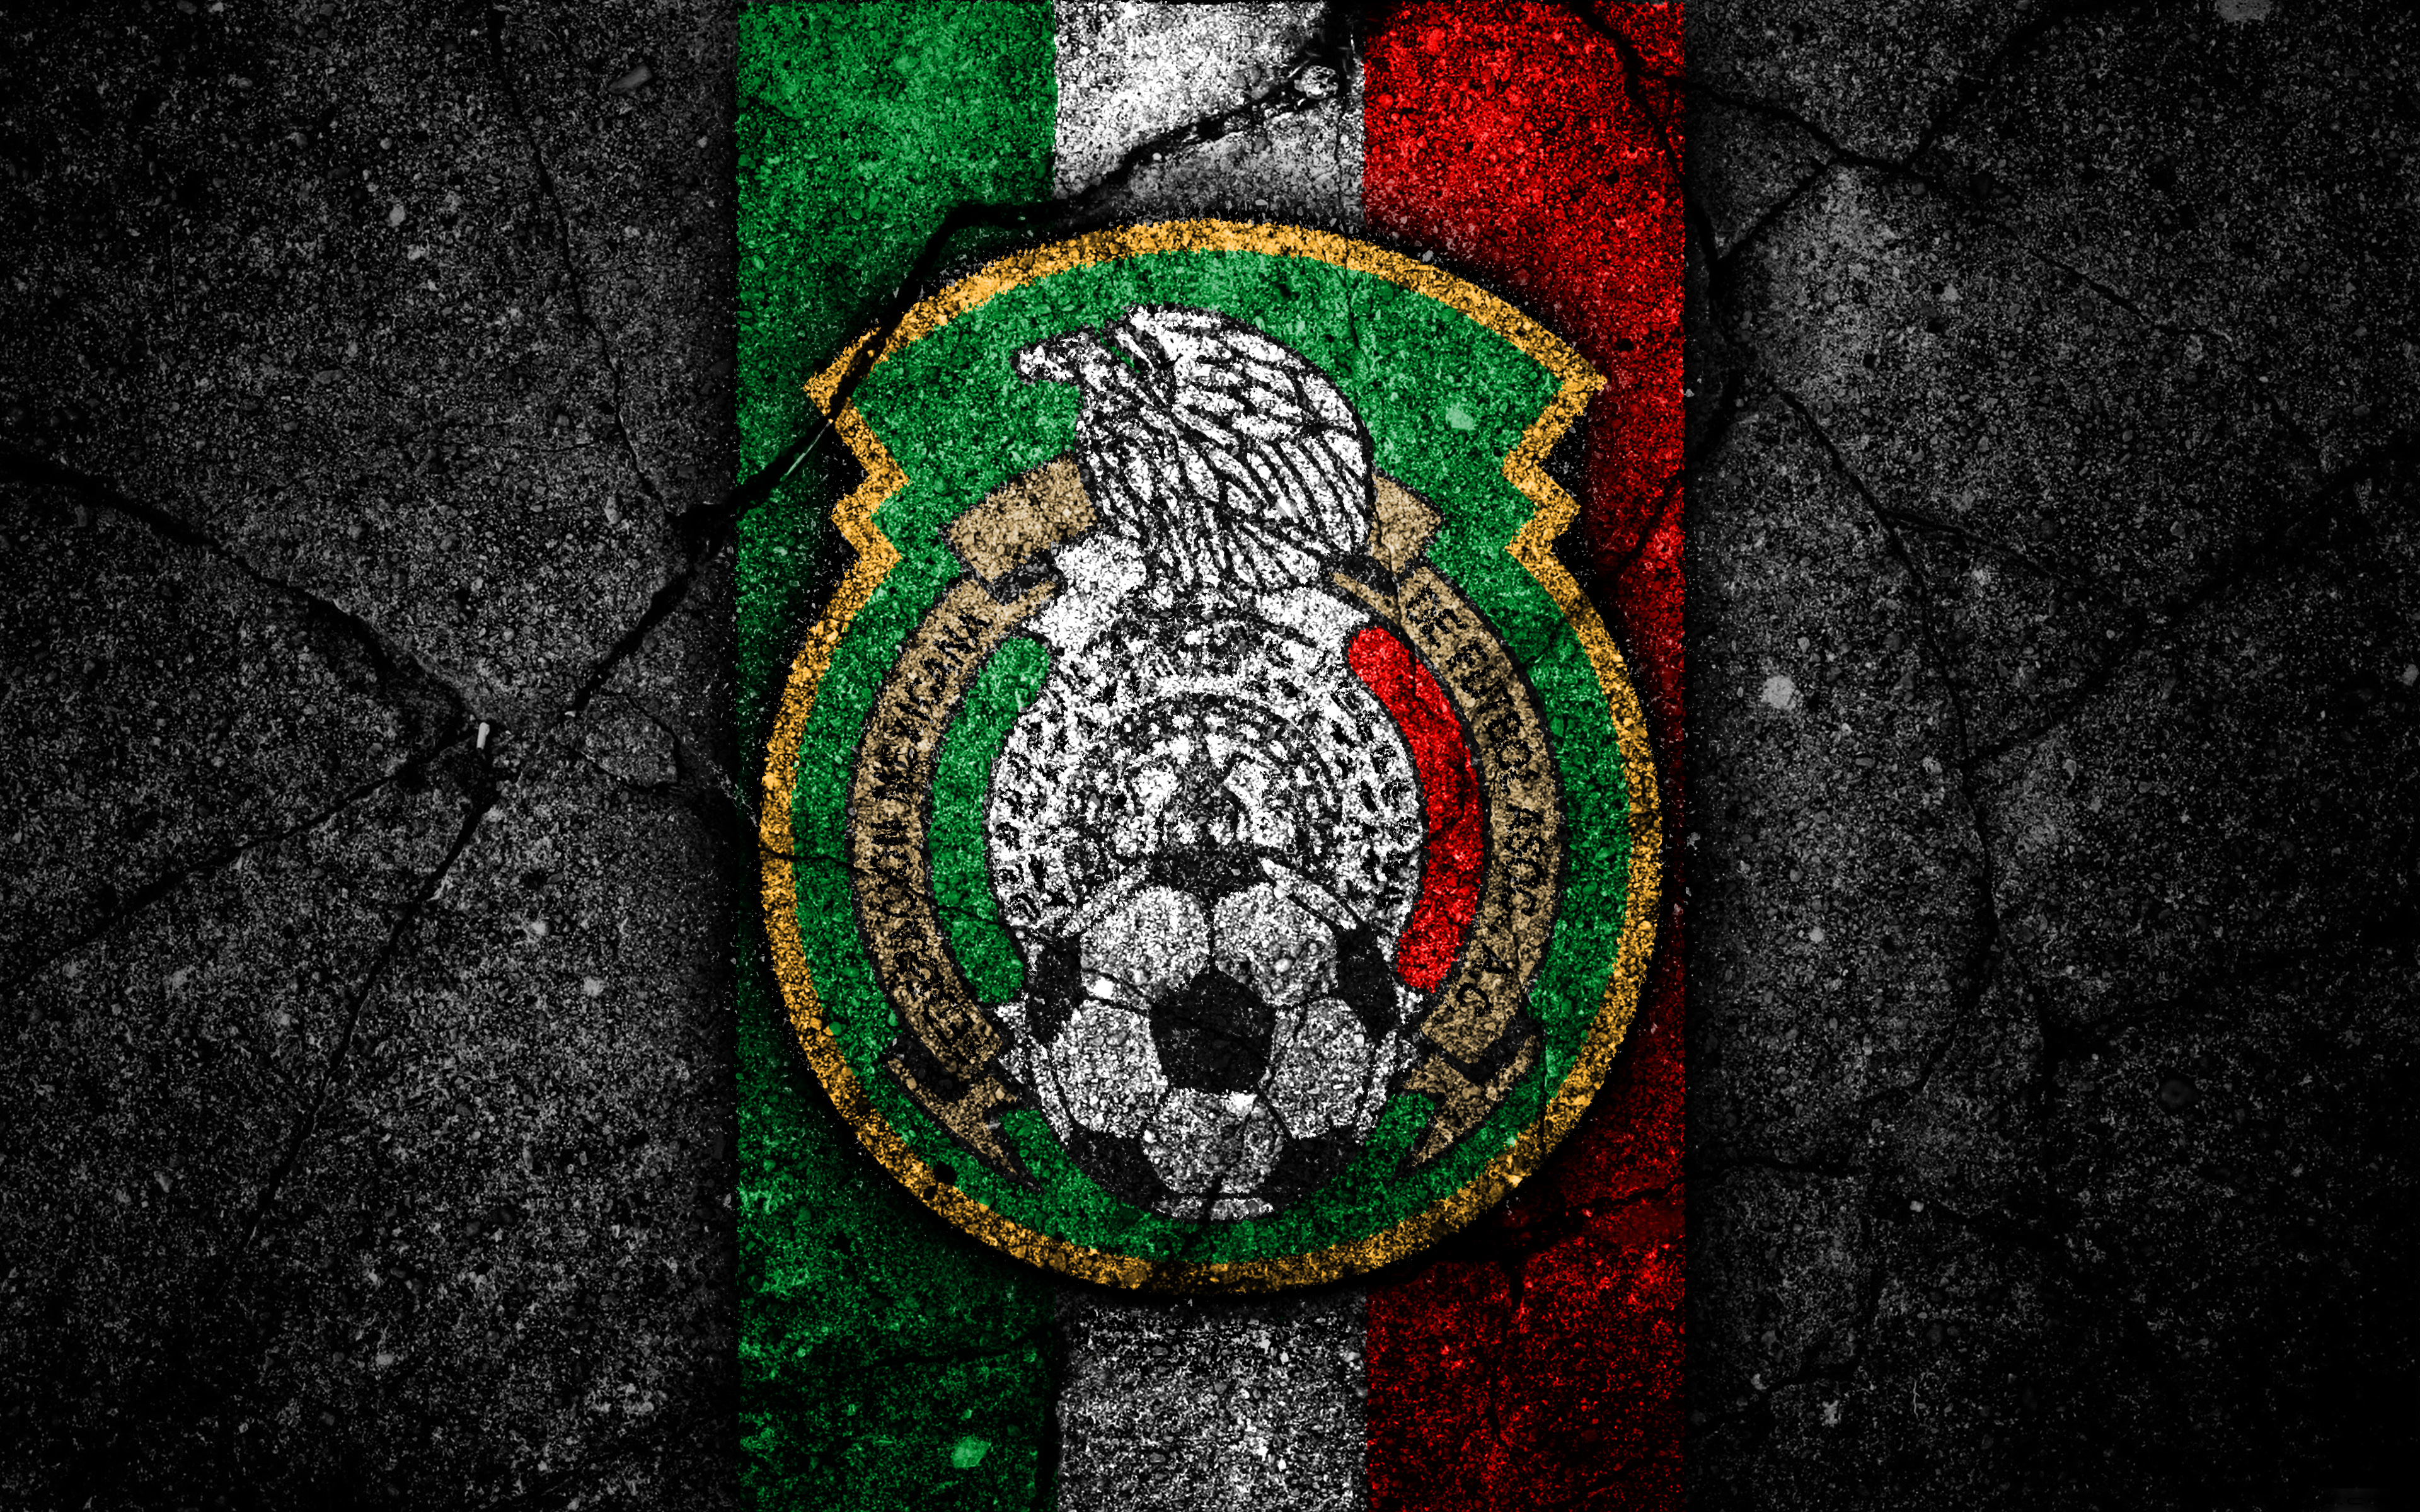 Melhores papéis de parede de Seleção Mexicana De Futebol para tela do telefone